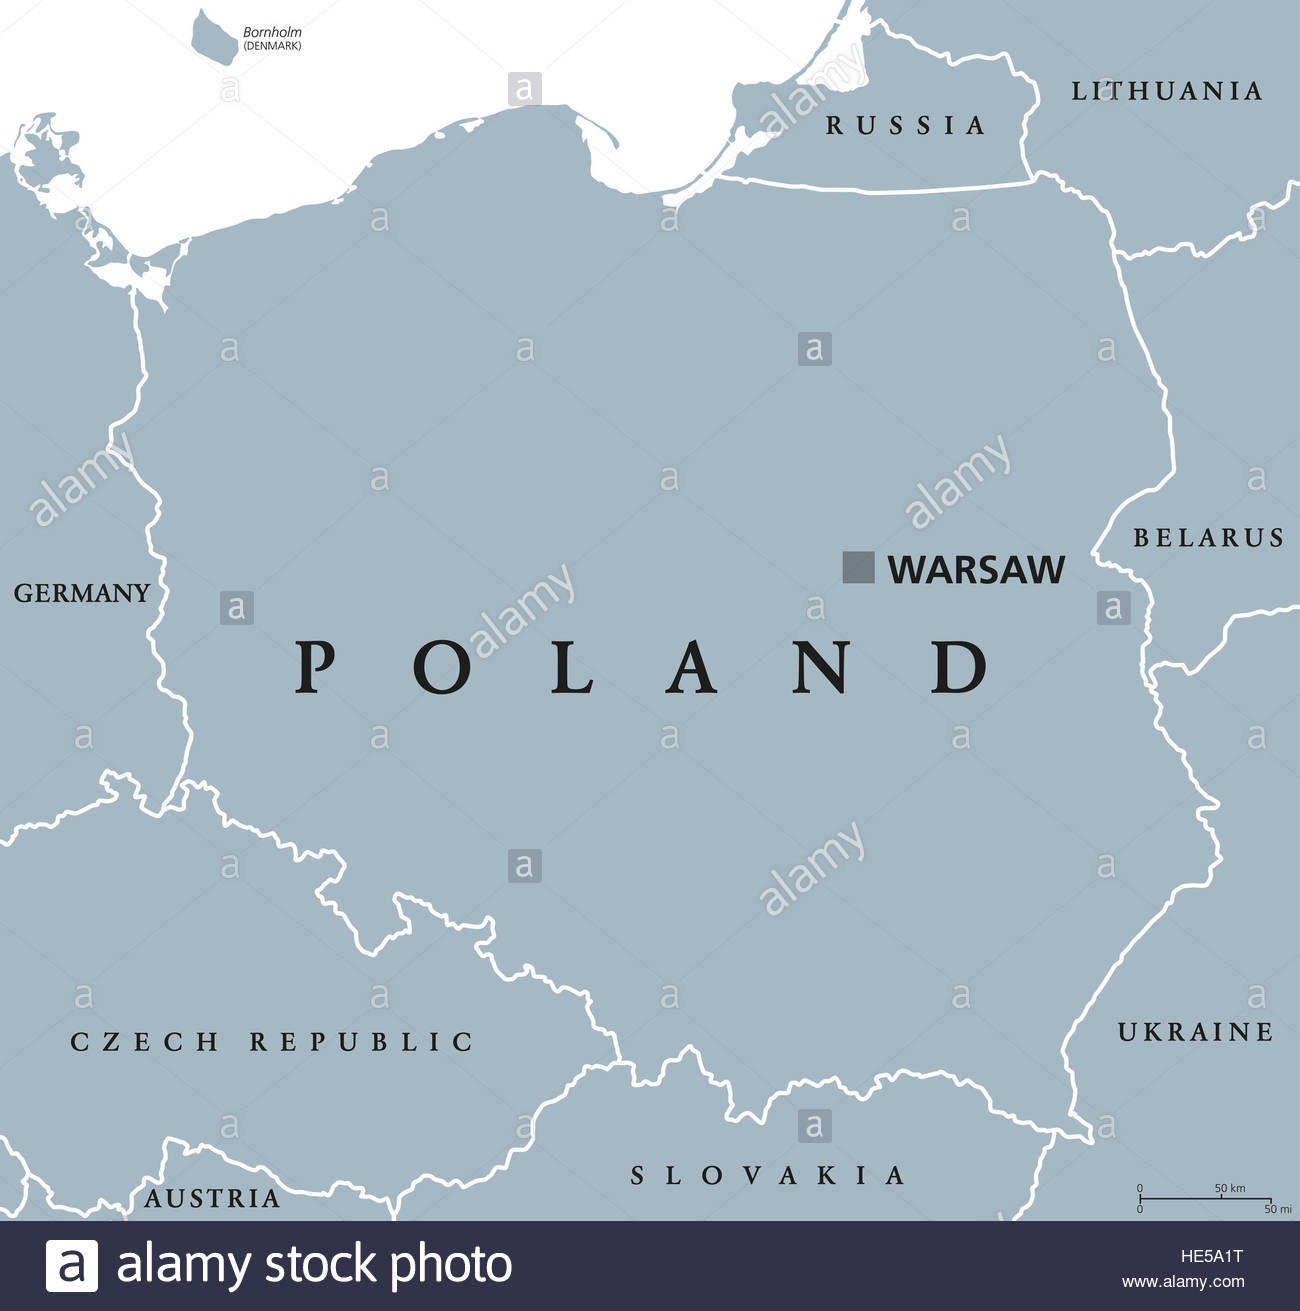 Carte Politique De La Pologne À Varsovie Et Les Pays Voisins pour Carte Europe Capitale 